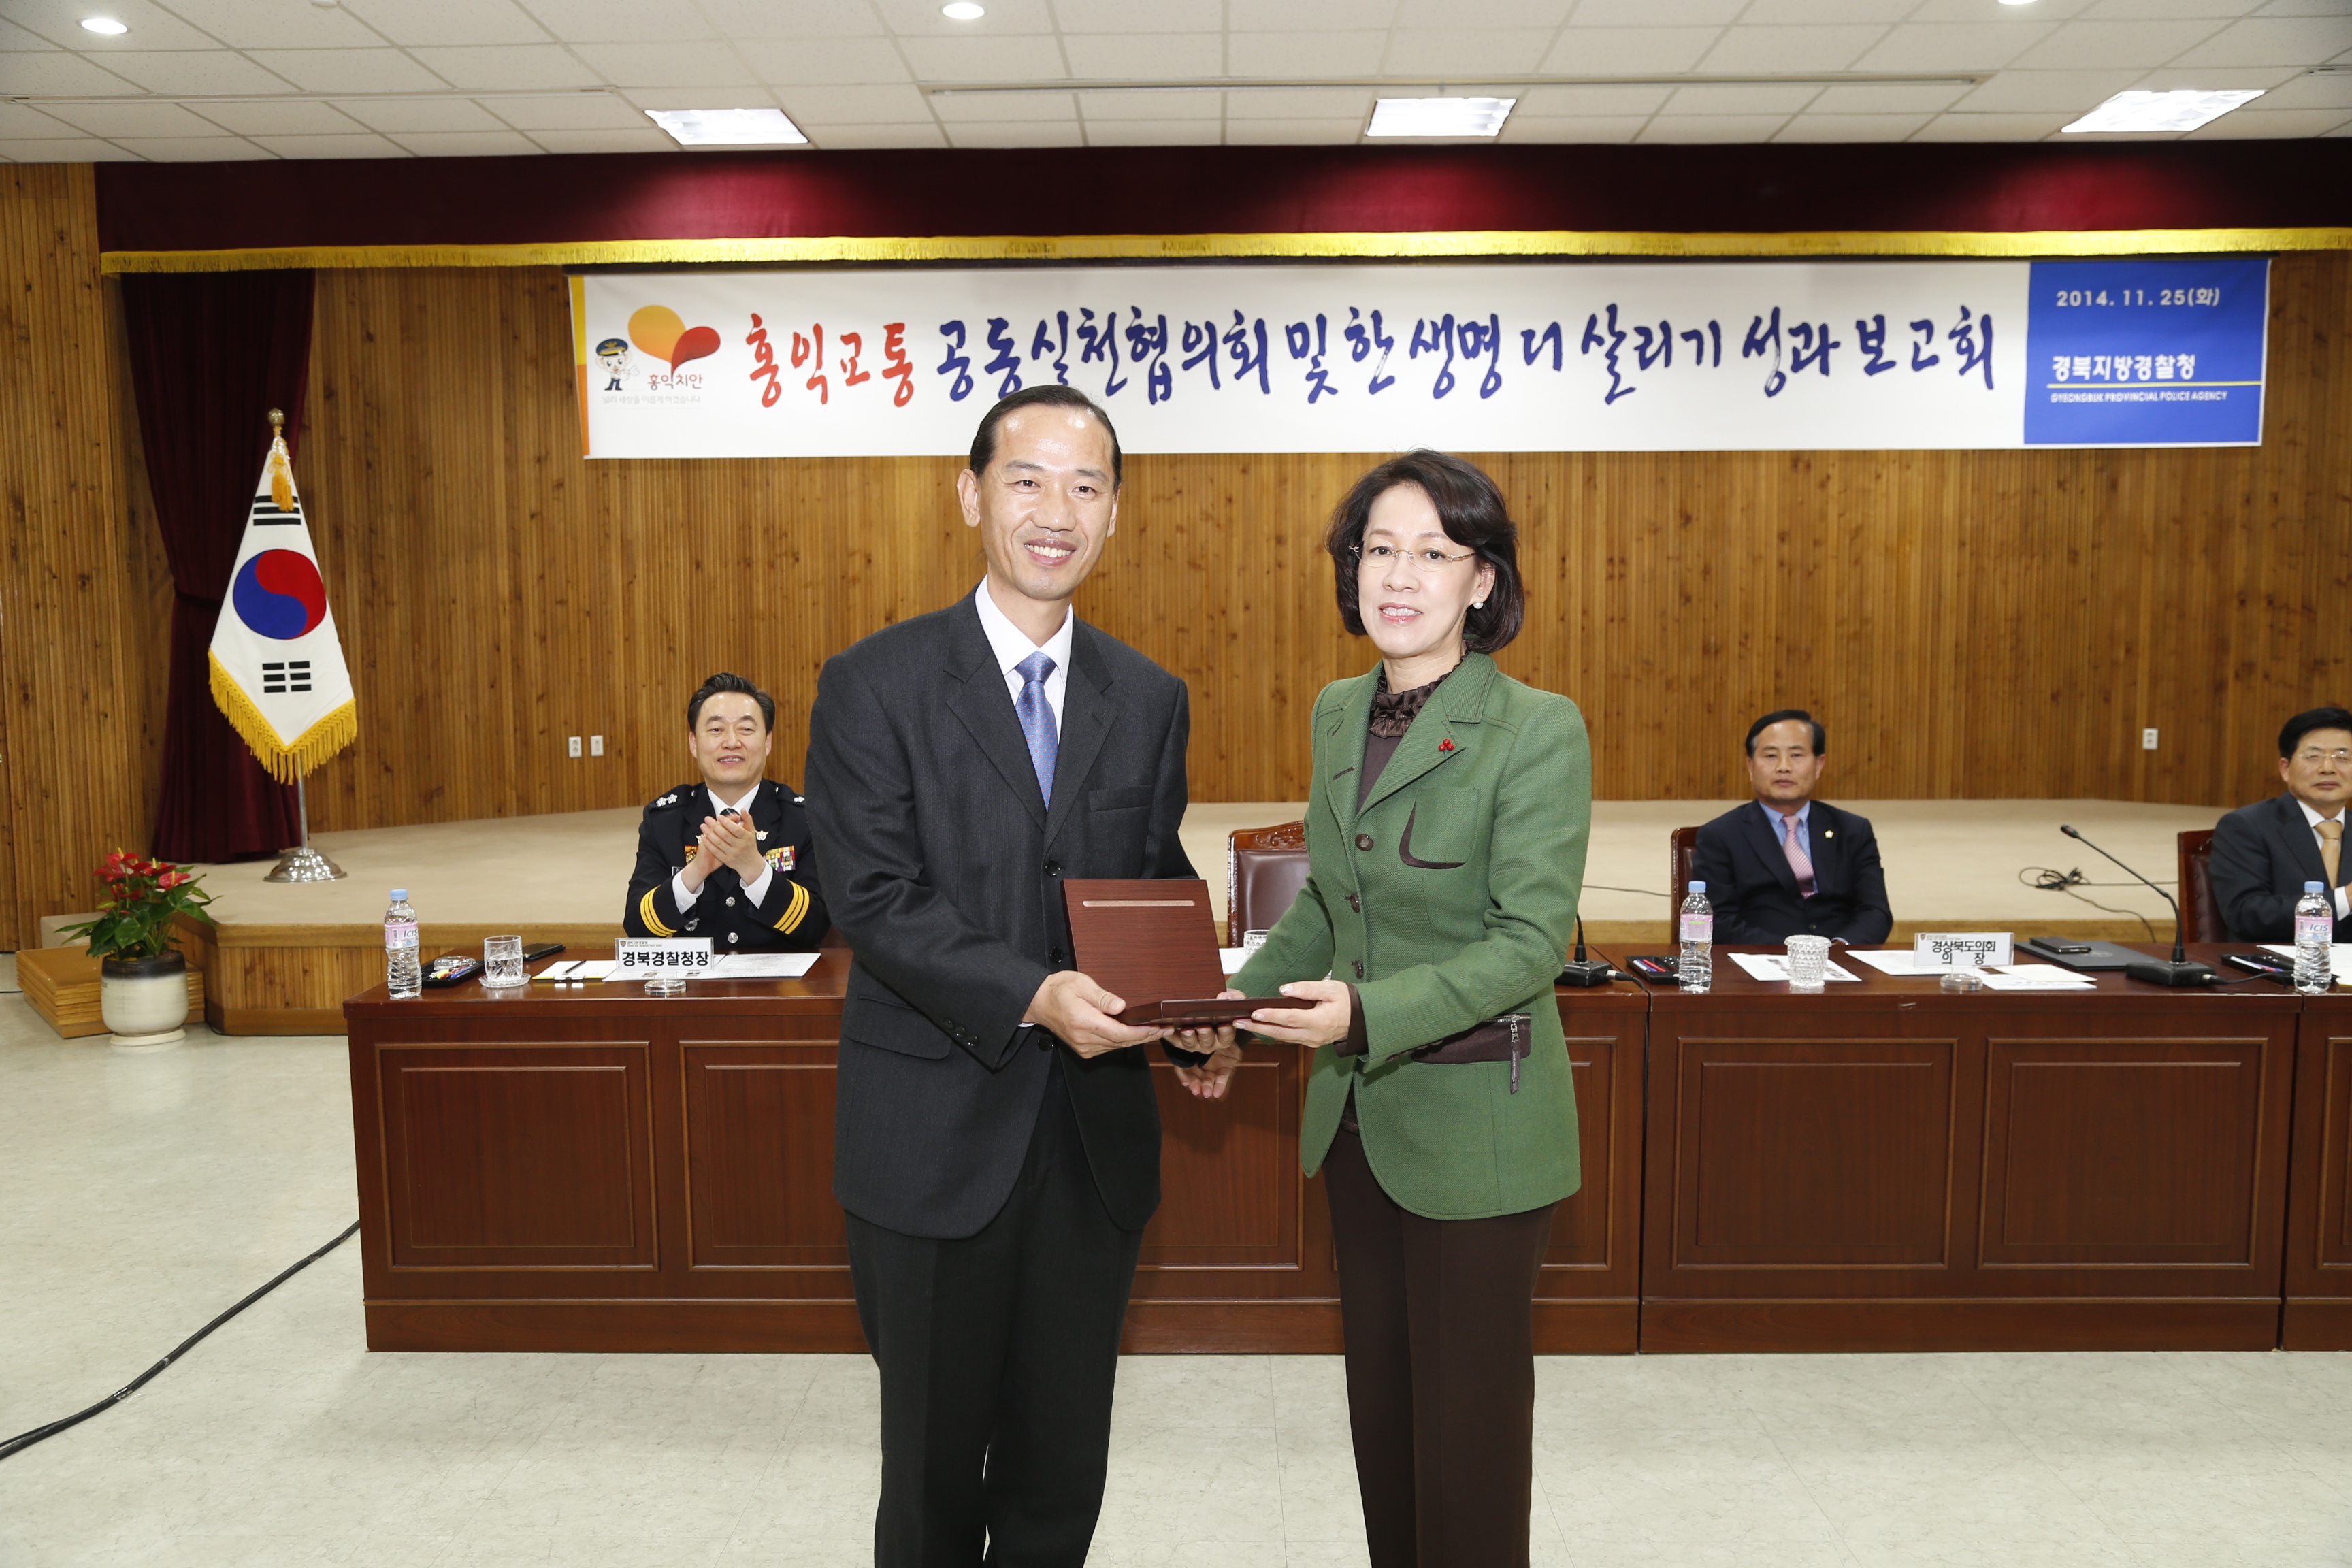 20141125 한생명더 살리기 위원회(이인선)